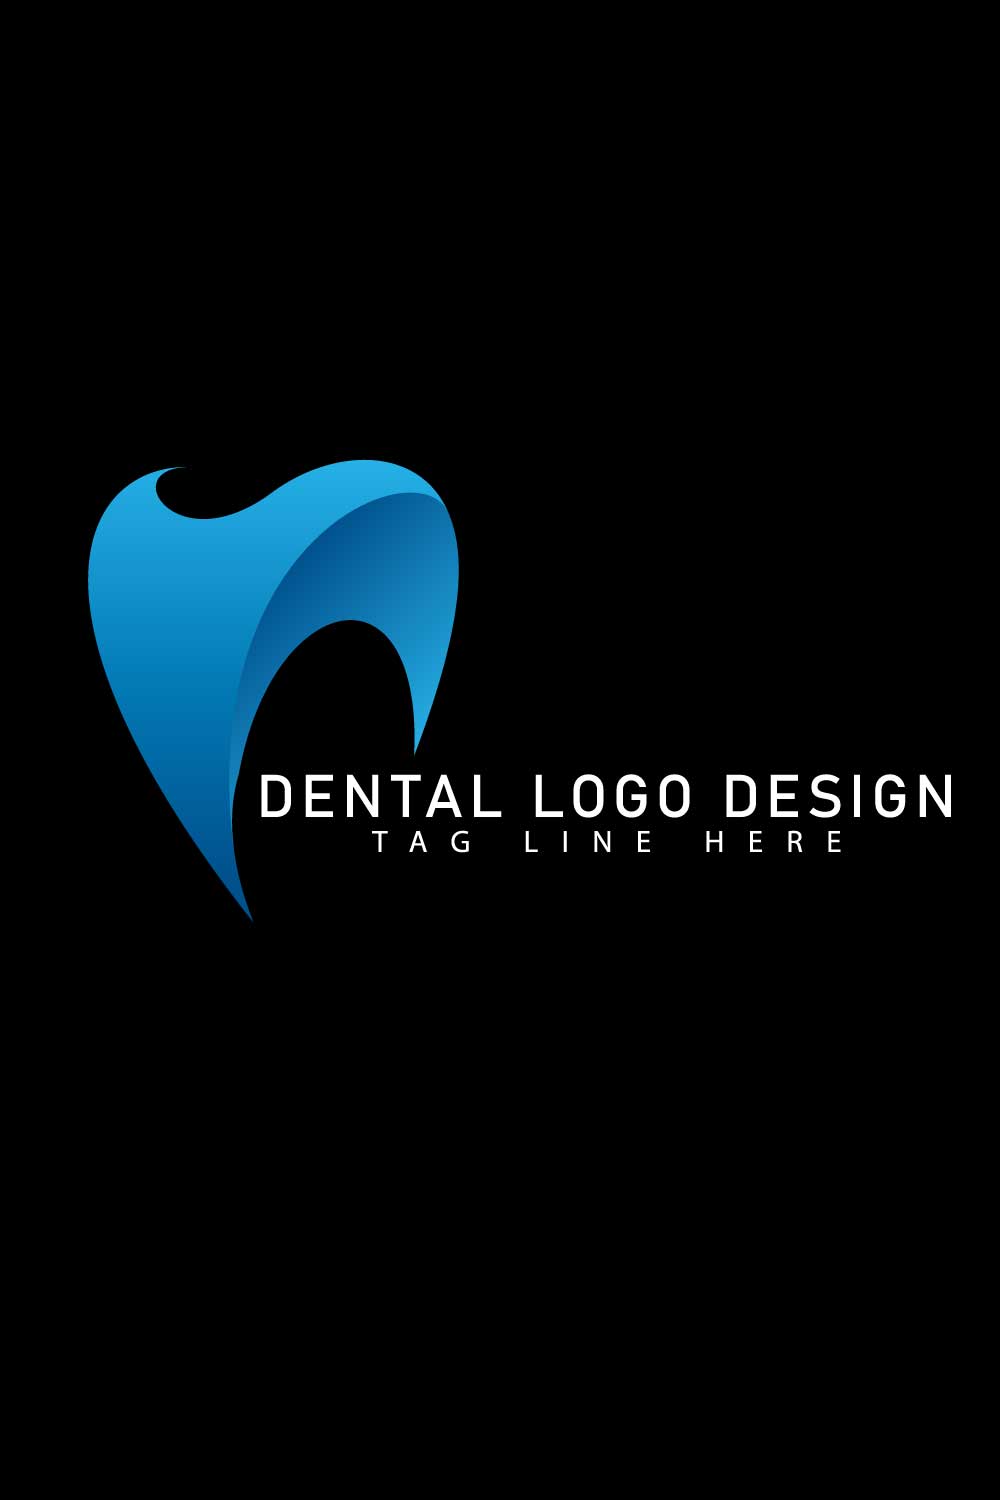 Dental Logo Design EPS SVG pinterest image.